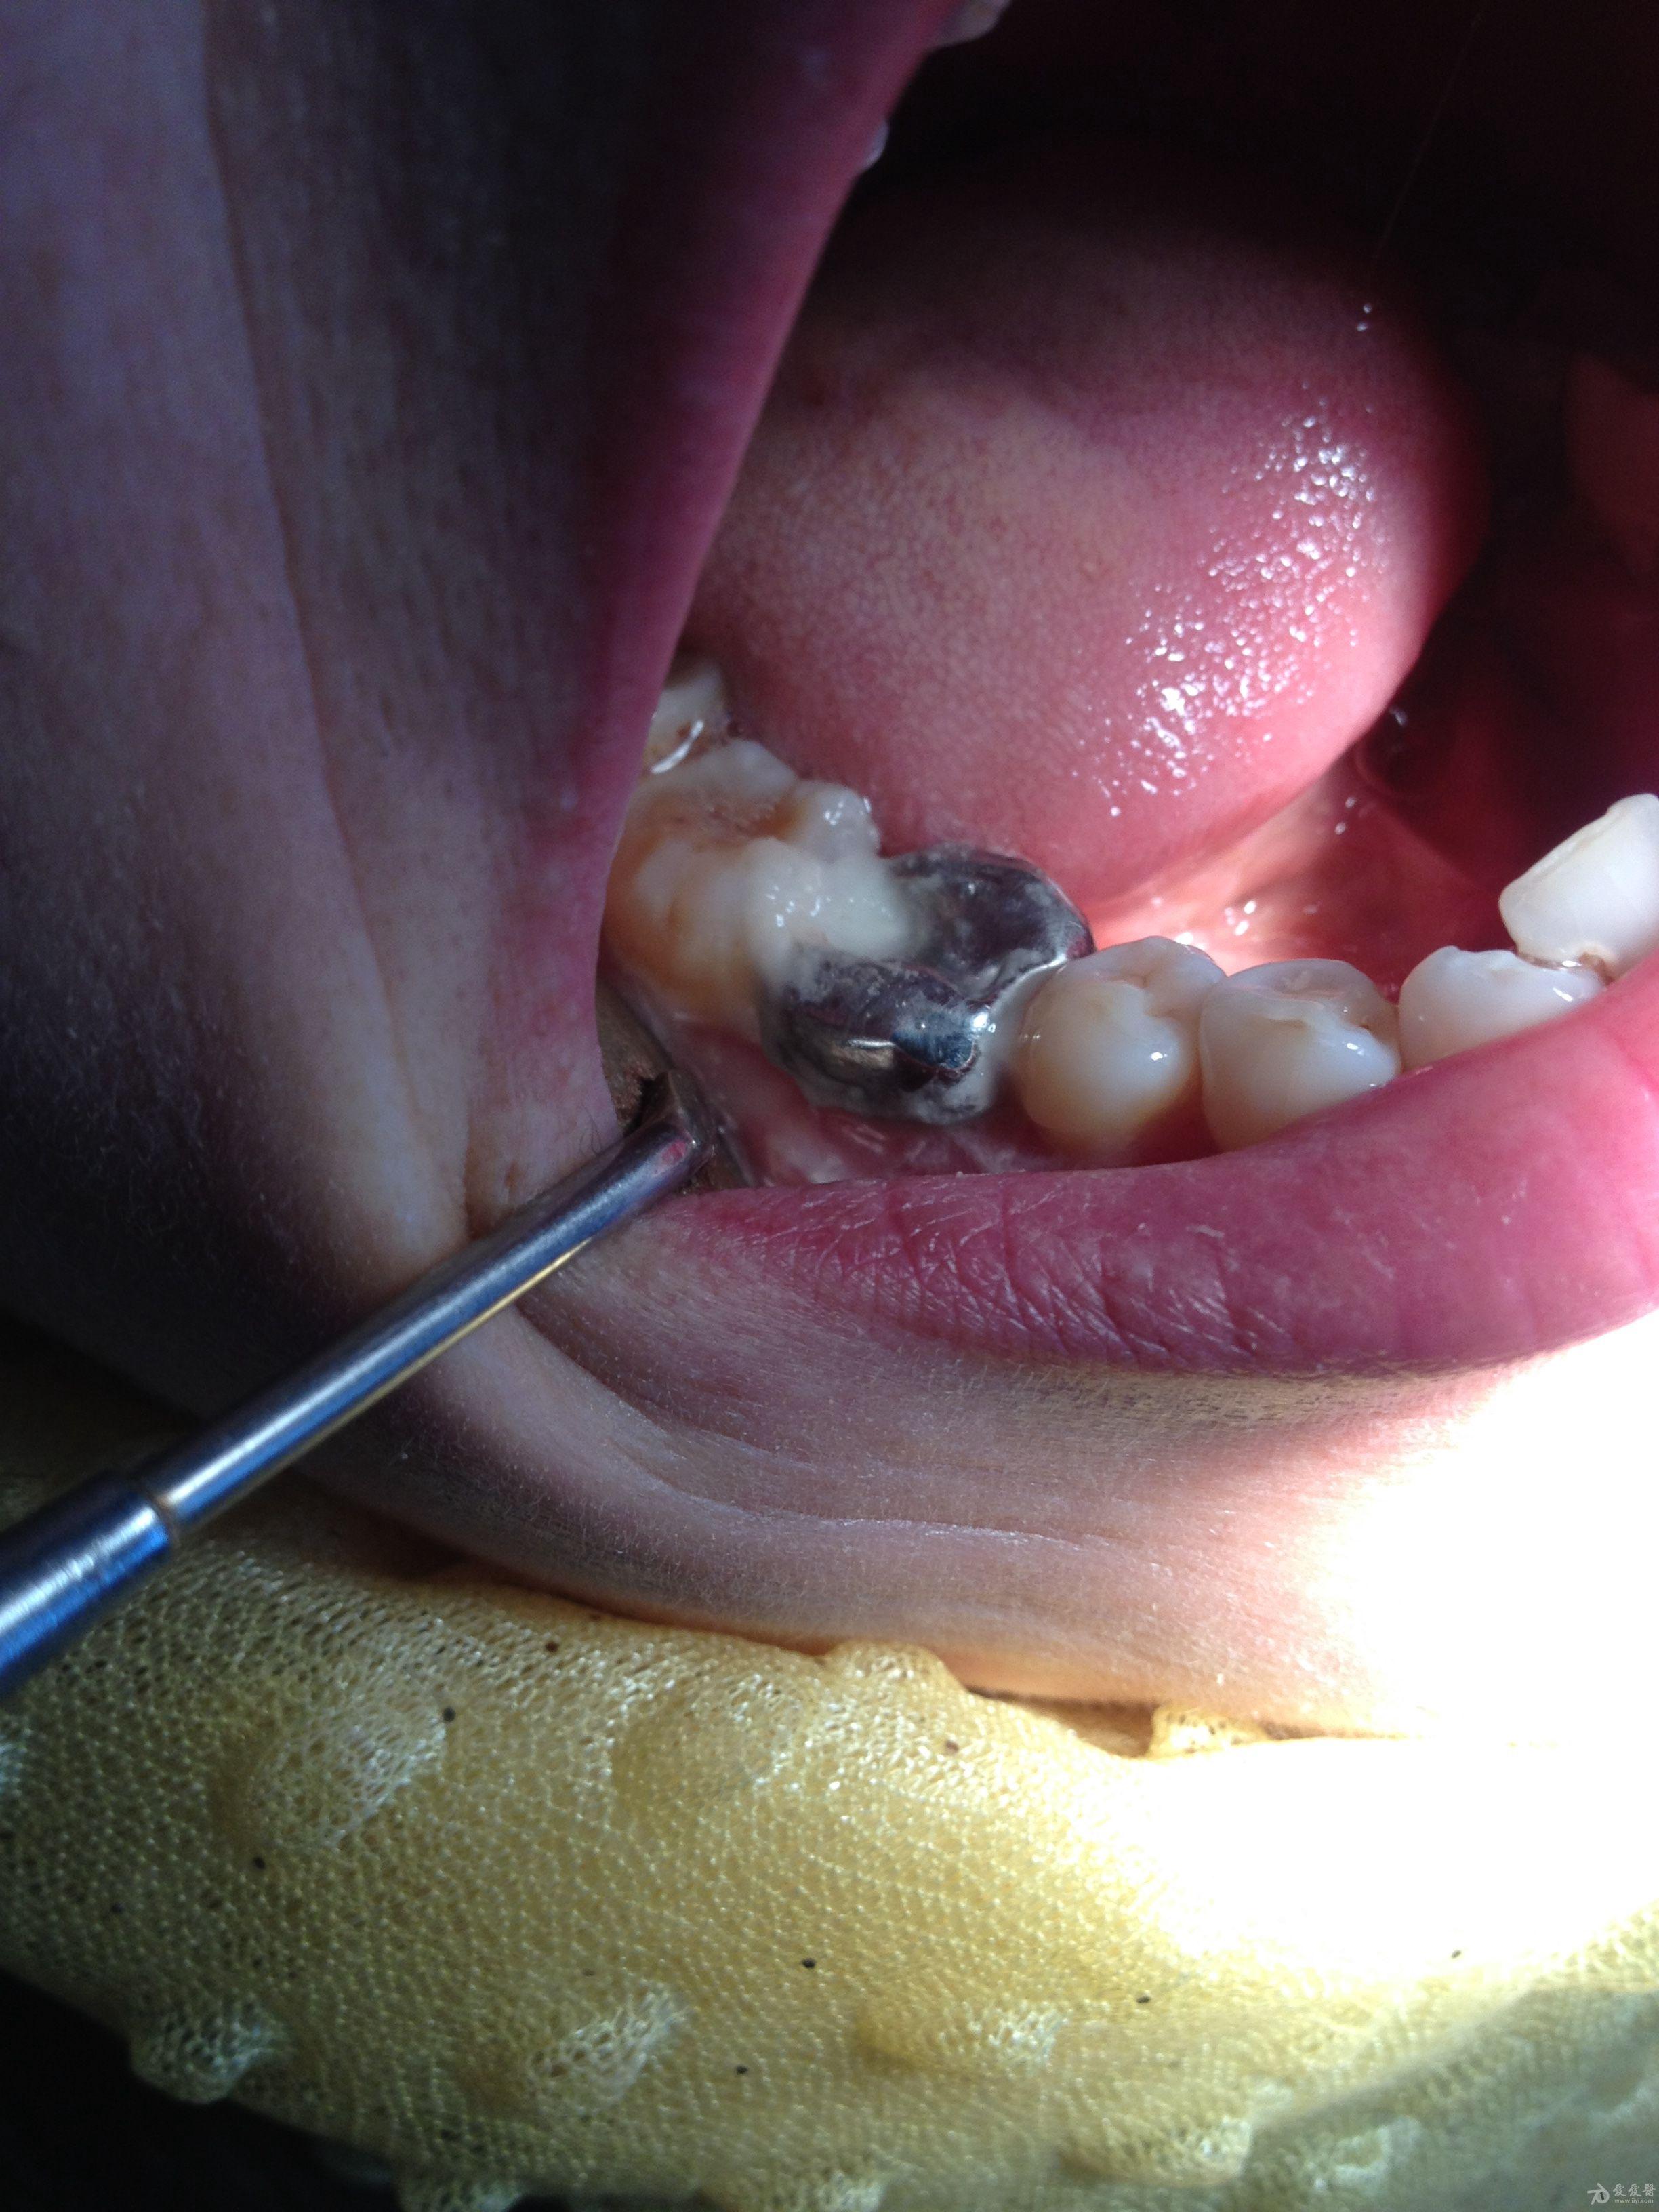 牙槽嵴裂图片